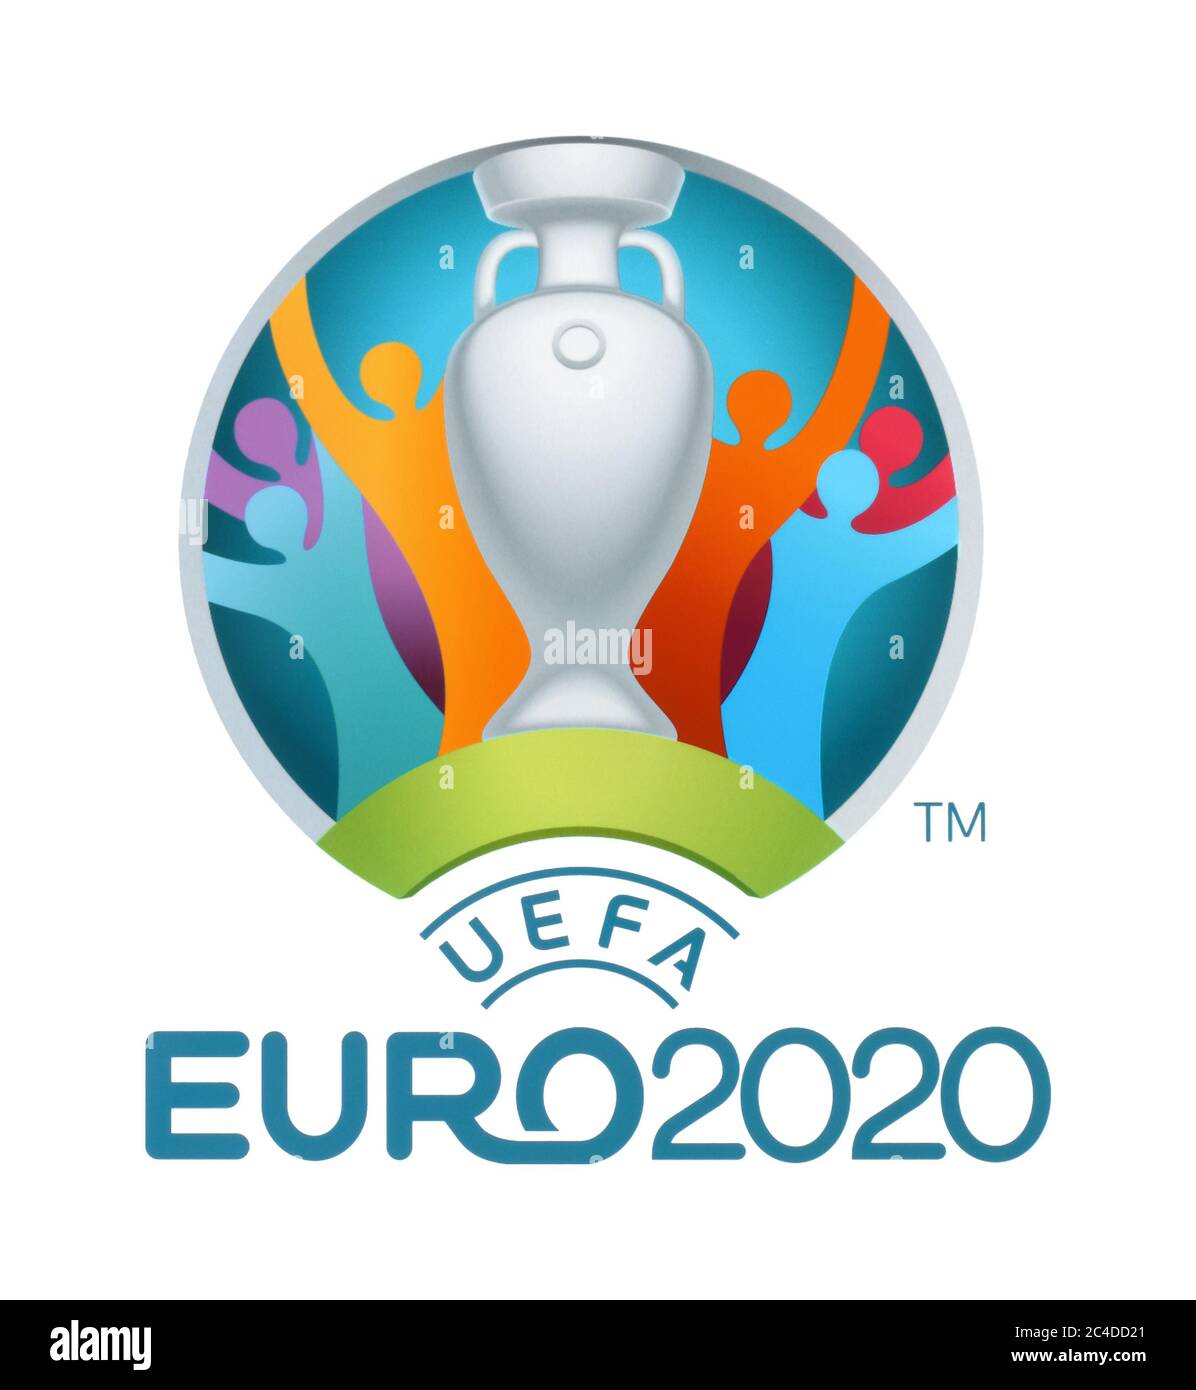 Kiev, Ucraina - 04 ottobre 2019: Logo ufficiale del Campionato europeo UEFA 2020, stampato su white paper Foto Stock